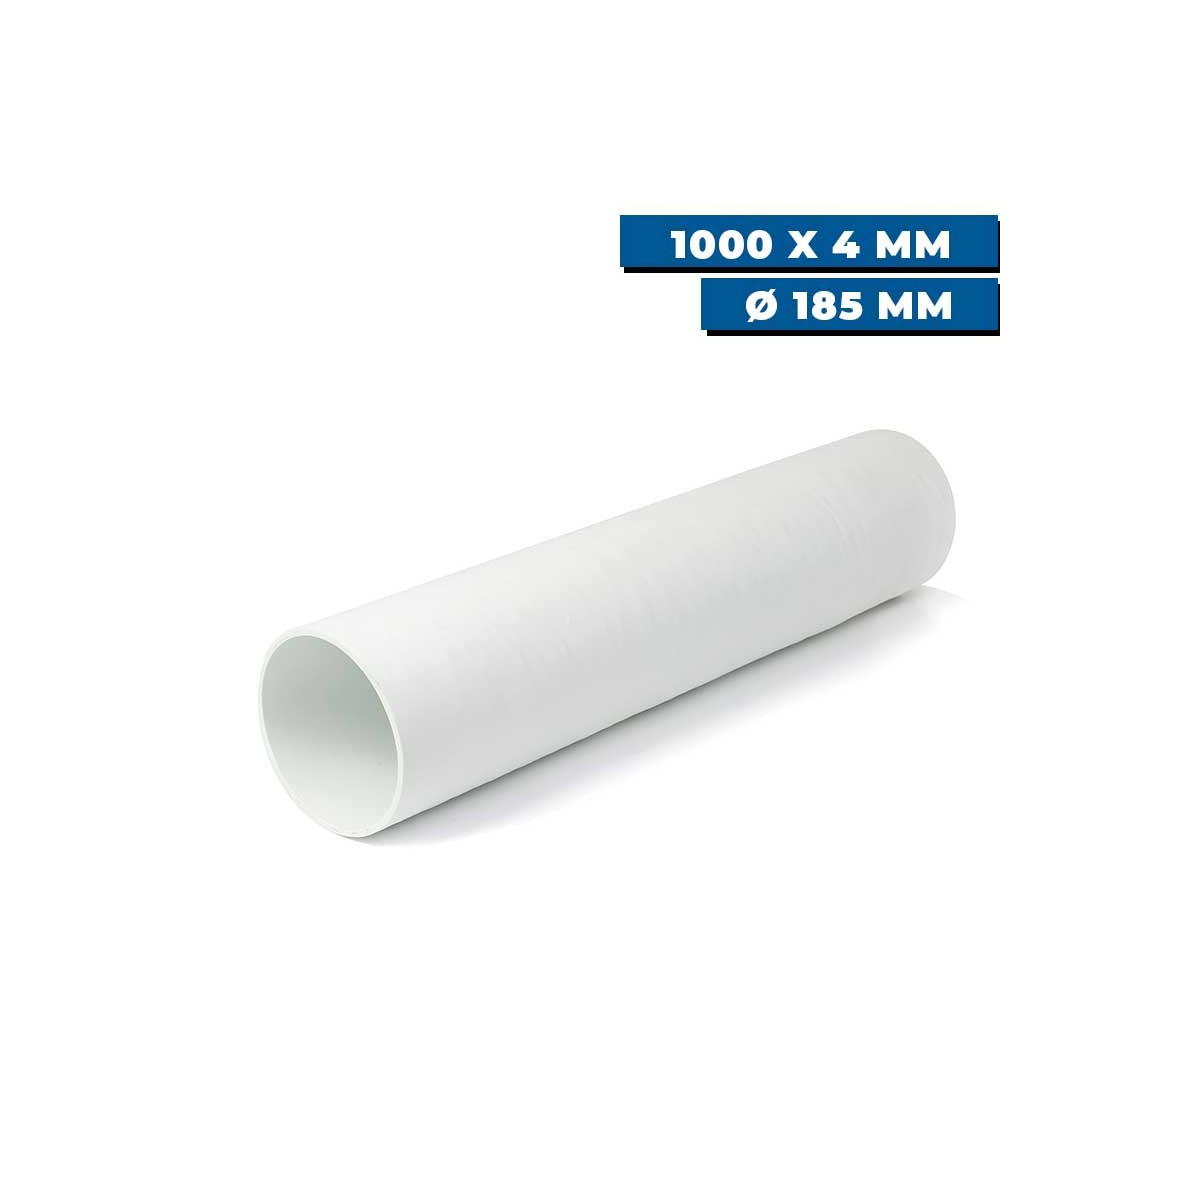 Tunnel polyester pour propulseur Ø 185 mm Sleipner 1000 x 4 mm